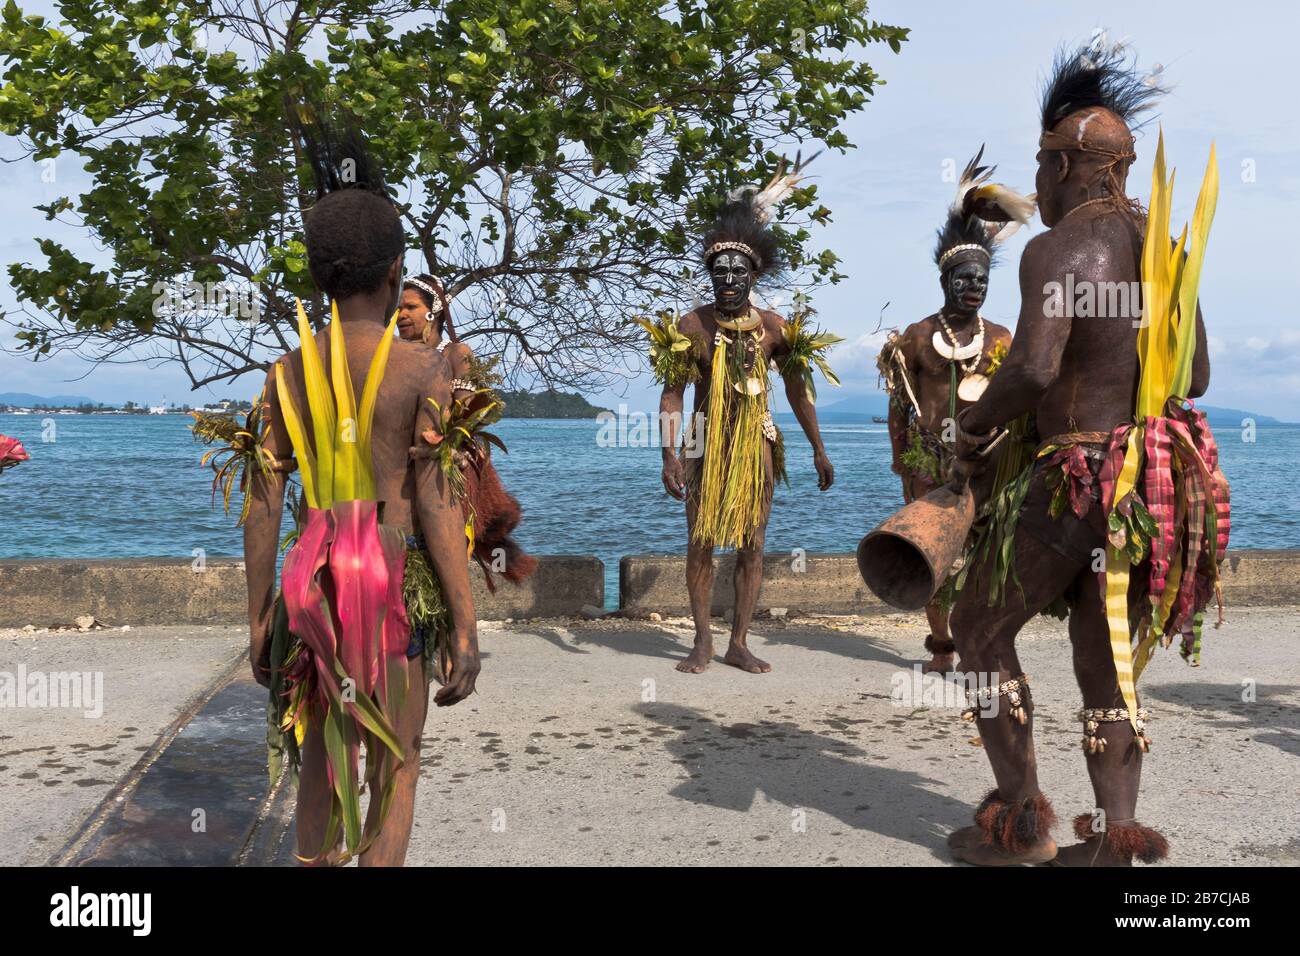 dh Port PNG nativen willkommen WEWAK PAPUA-NEUGUINEA traditionellen Schlagzeuger begrüßen Kreuzfahrt-Schiff Besucher Menschen Tourismus Stammes Kleid Kulturgruppe Stockfoto